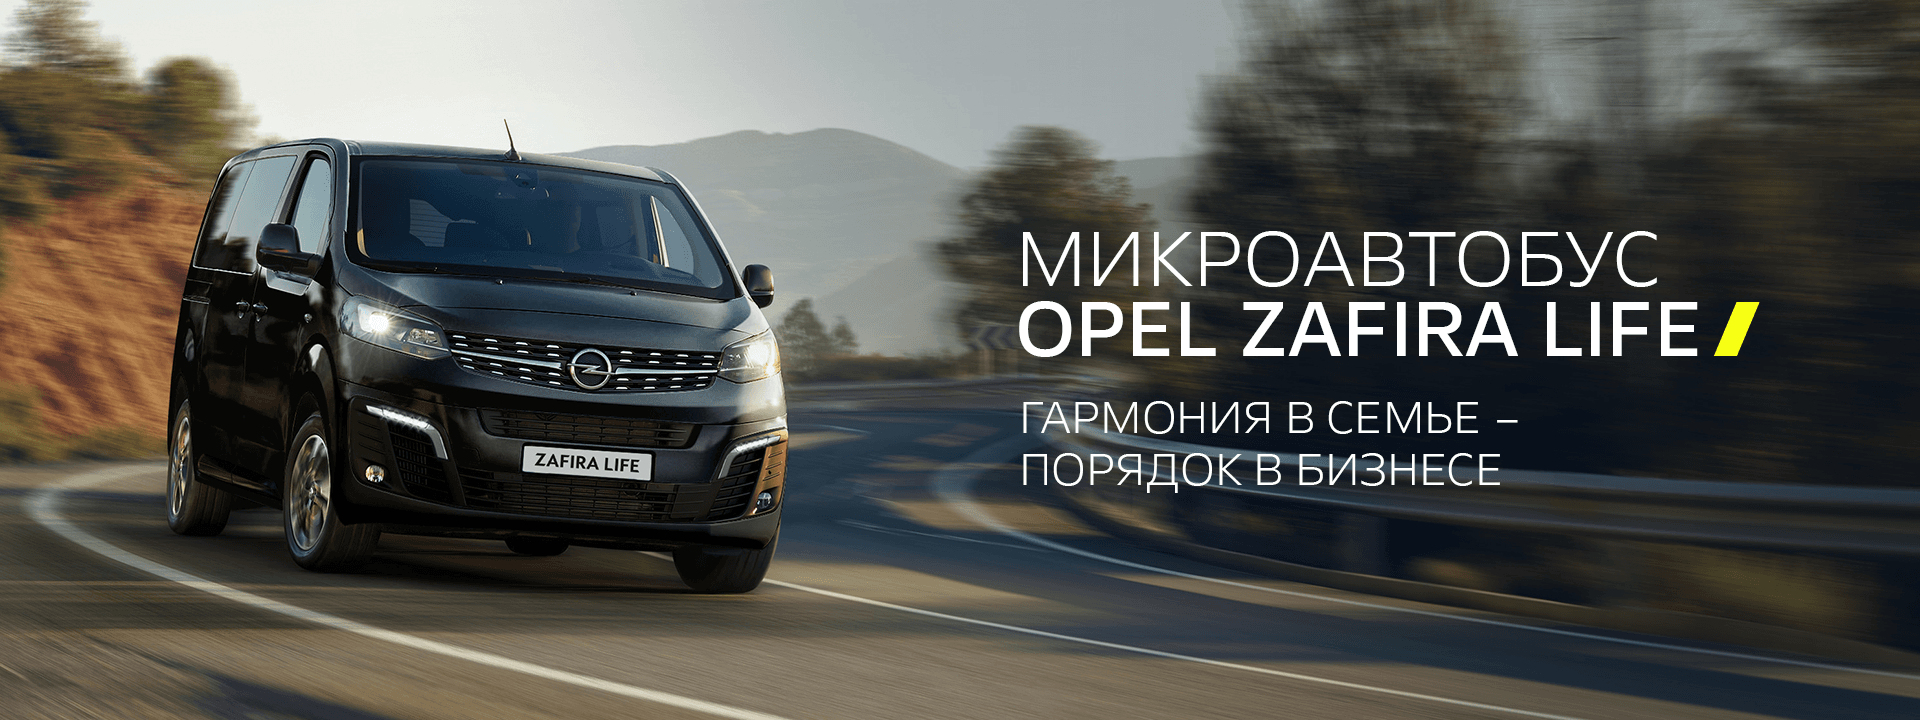 Новый автомобиль Opel Zafira Life